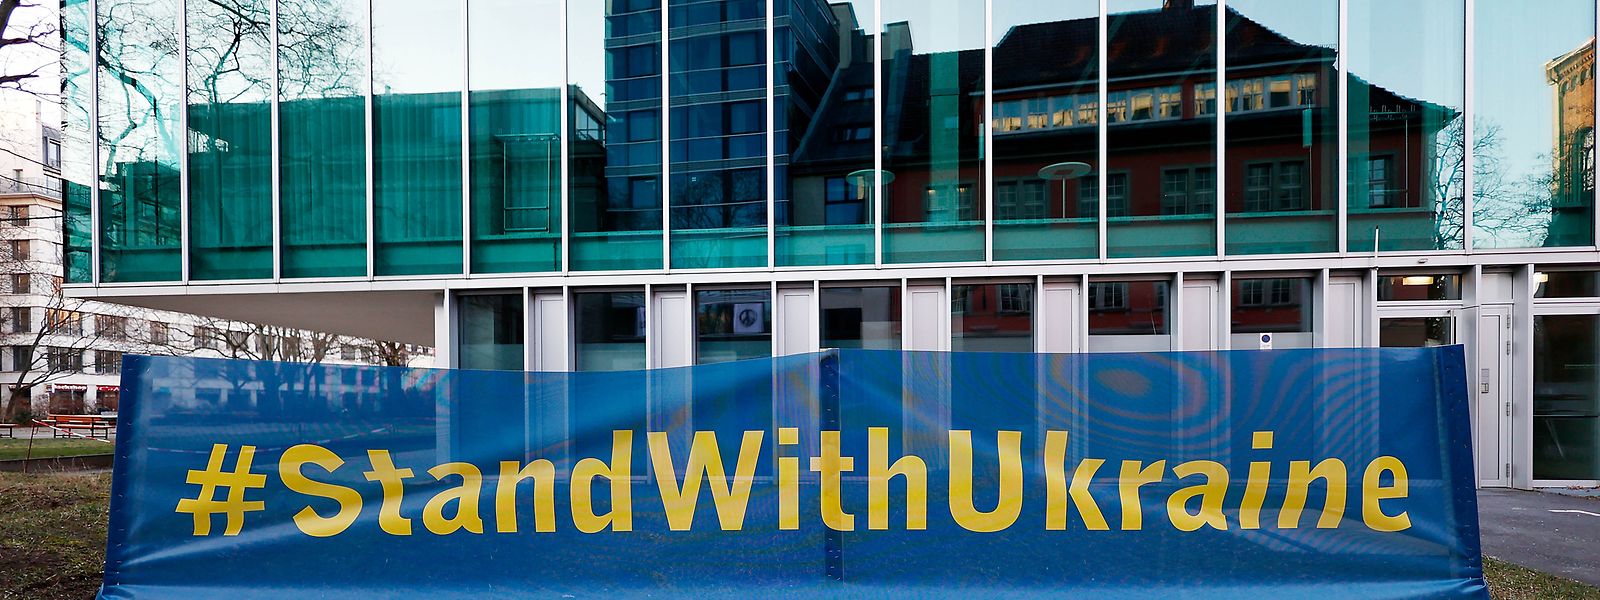 Gegenüber einer Botschaft der Ukraine haben Menschen ein Banner mit der Aufschrift „#StandWithUkraine“ aufgestellt, um ihre Solidarität und Anteilnahme für die Ukraine zu zeigen.